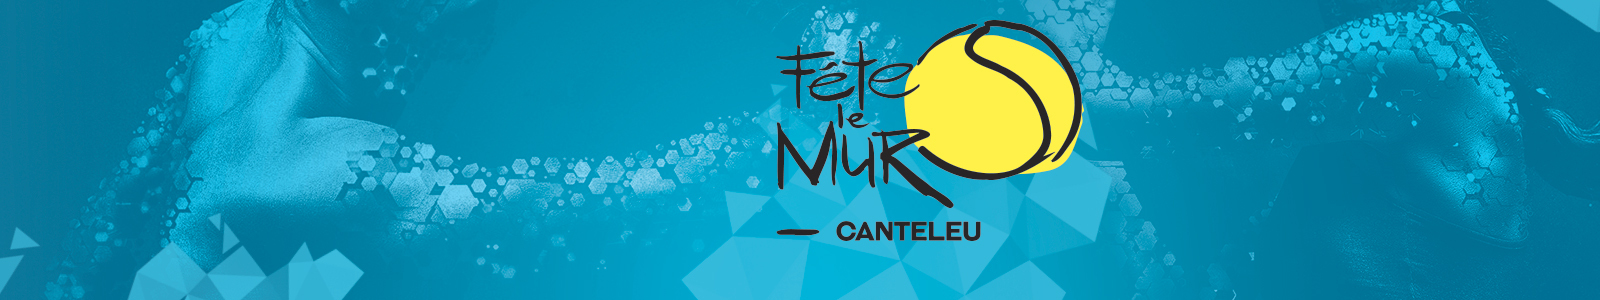 Fête Le Mur Canteleu : site officiel du club de tennis de Canteleu - clubeo